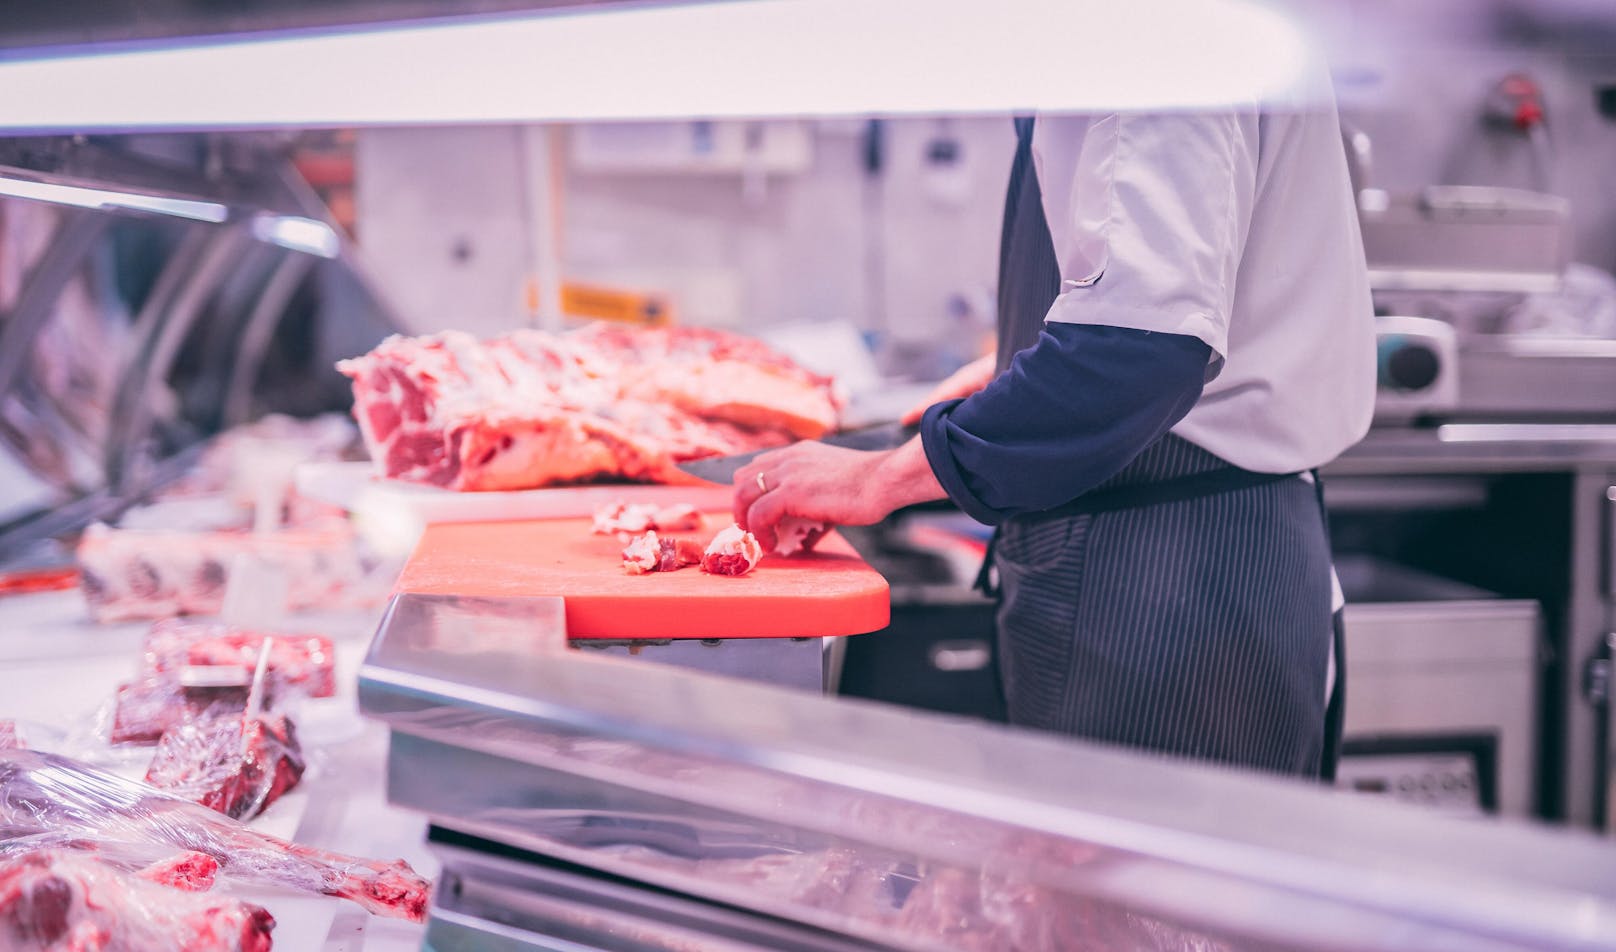 Von elf Fleischproben aus dem Großhandel zeigt laut Grünen mehr als ein Drittel eine "erschreckende Belastung" mit Keimen.